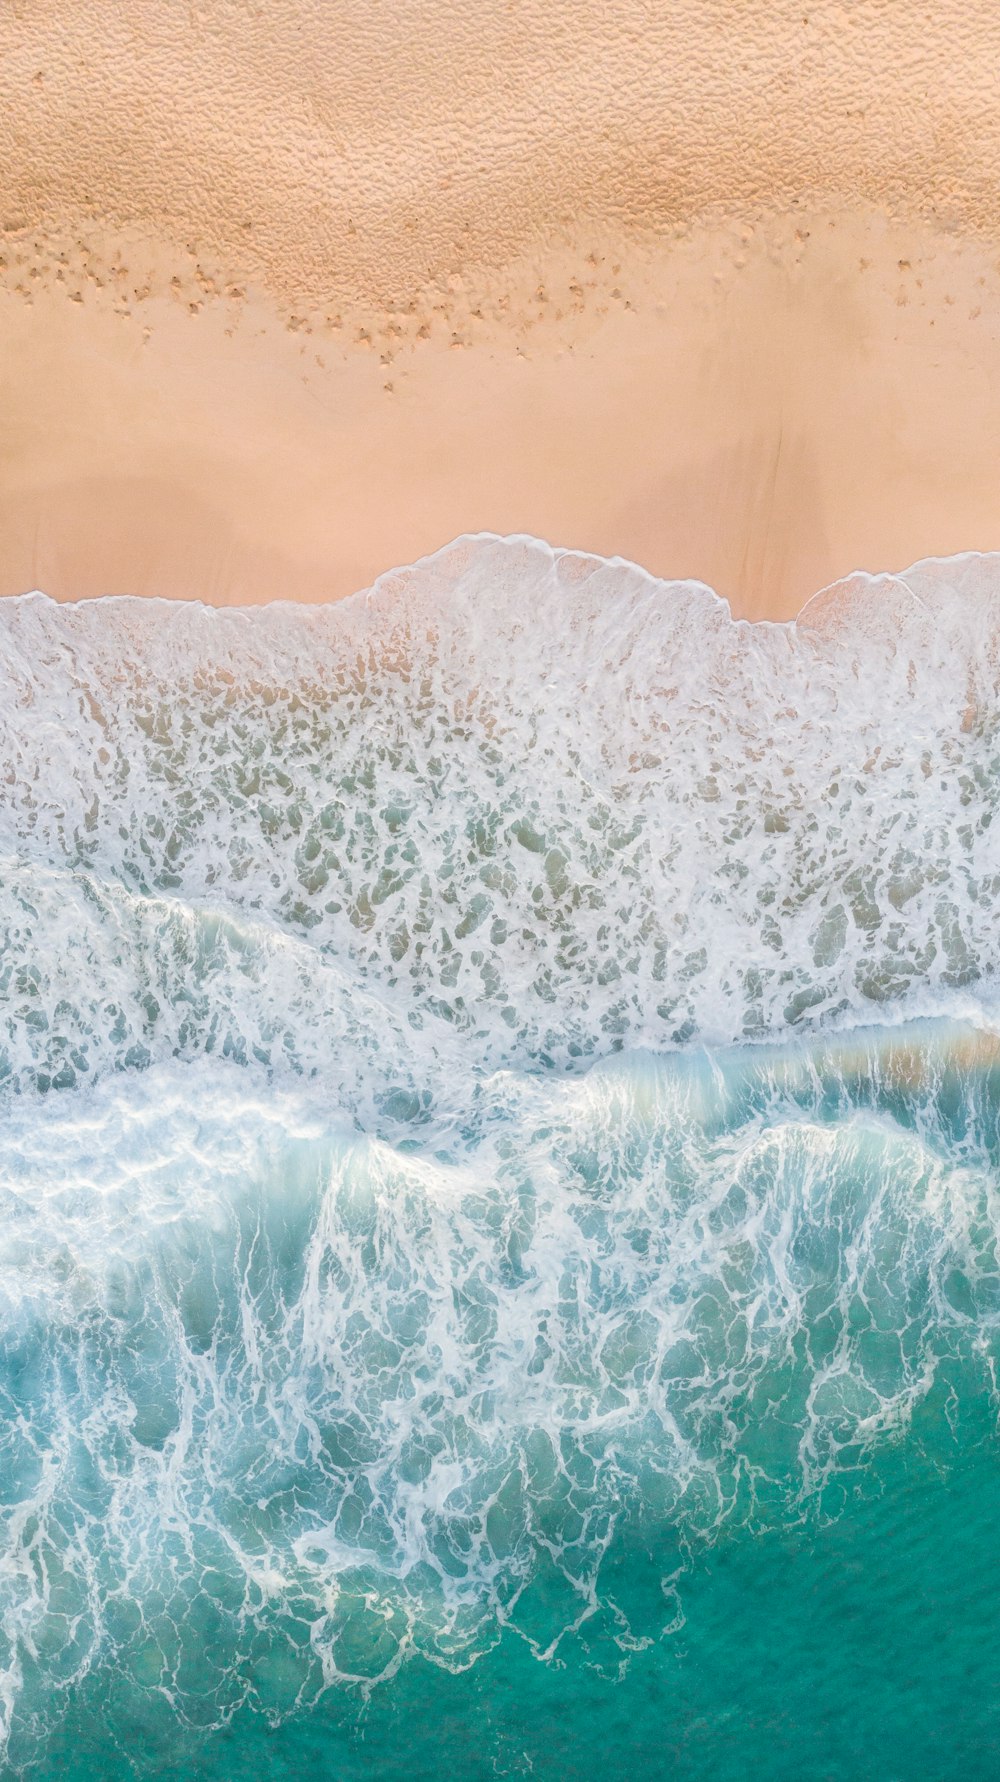 Fotografía aérea de las olas chapoteando en la playa de arena blanca